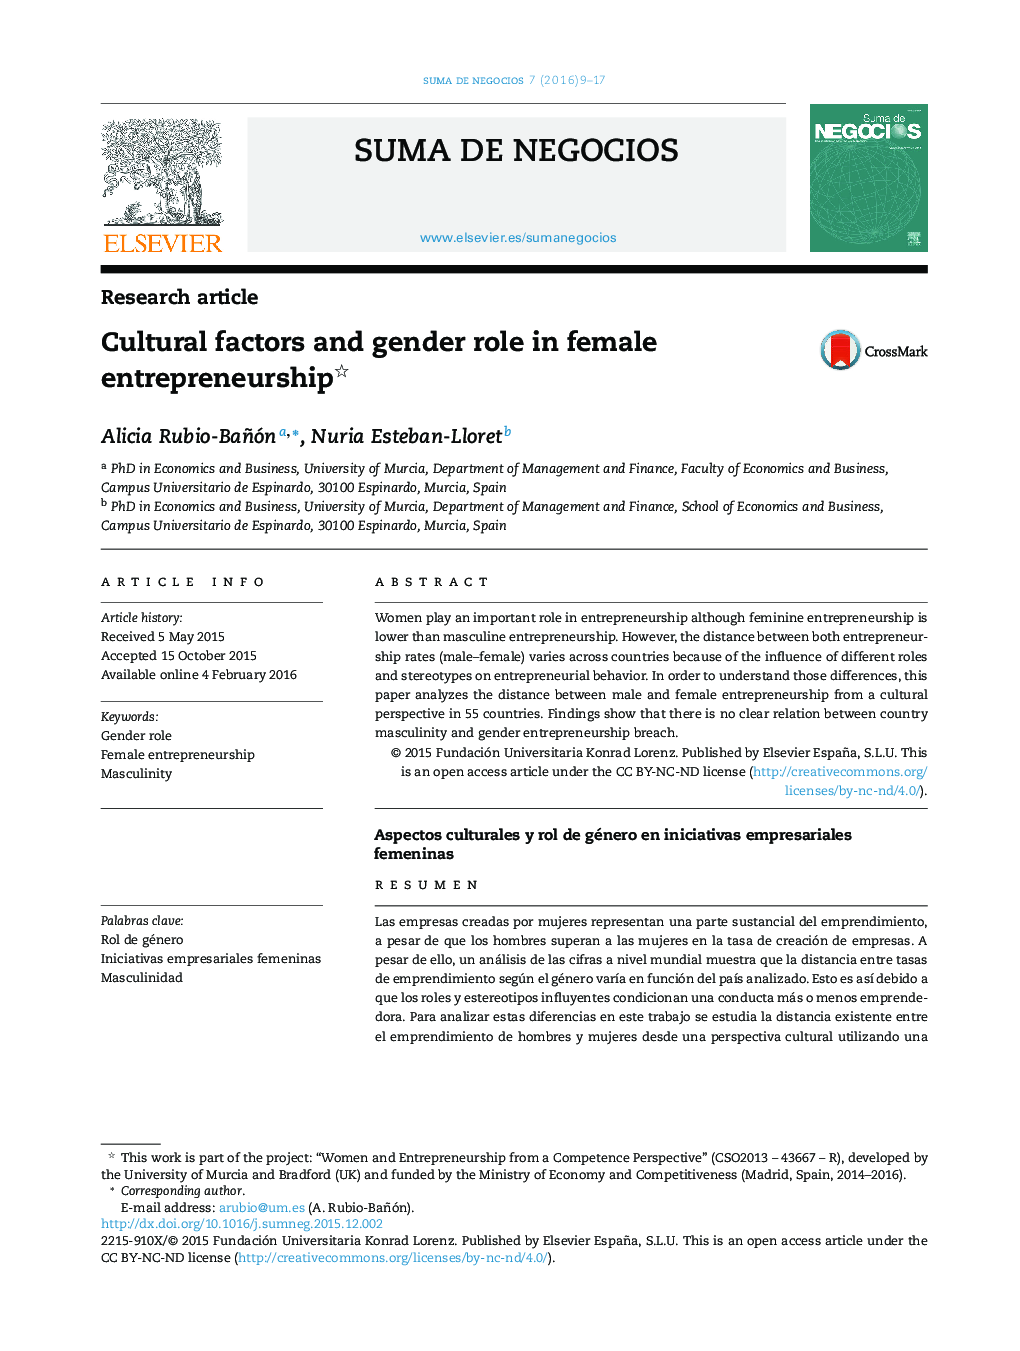 نقش عوامل فرهنگی و جنسیت در کارآفرینی زنان